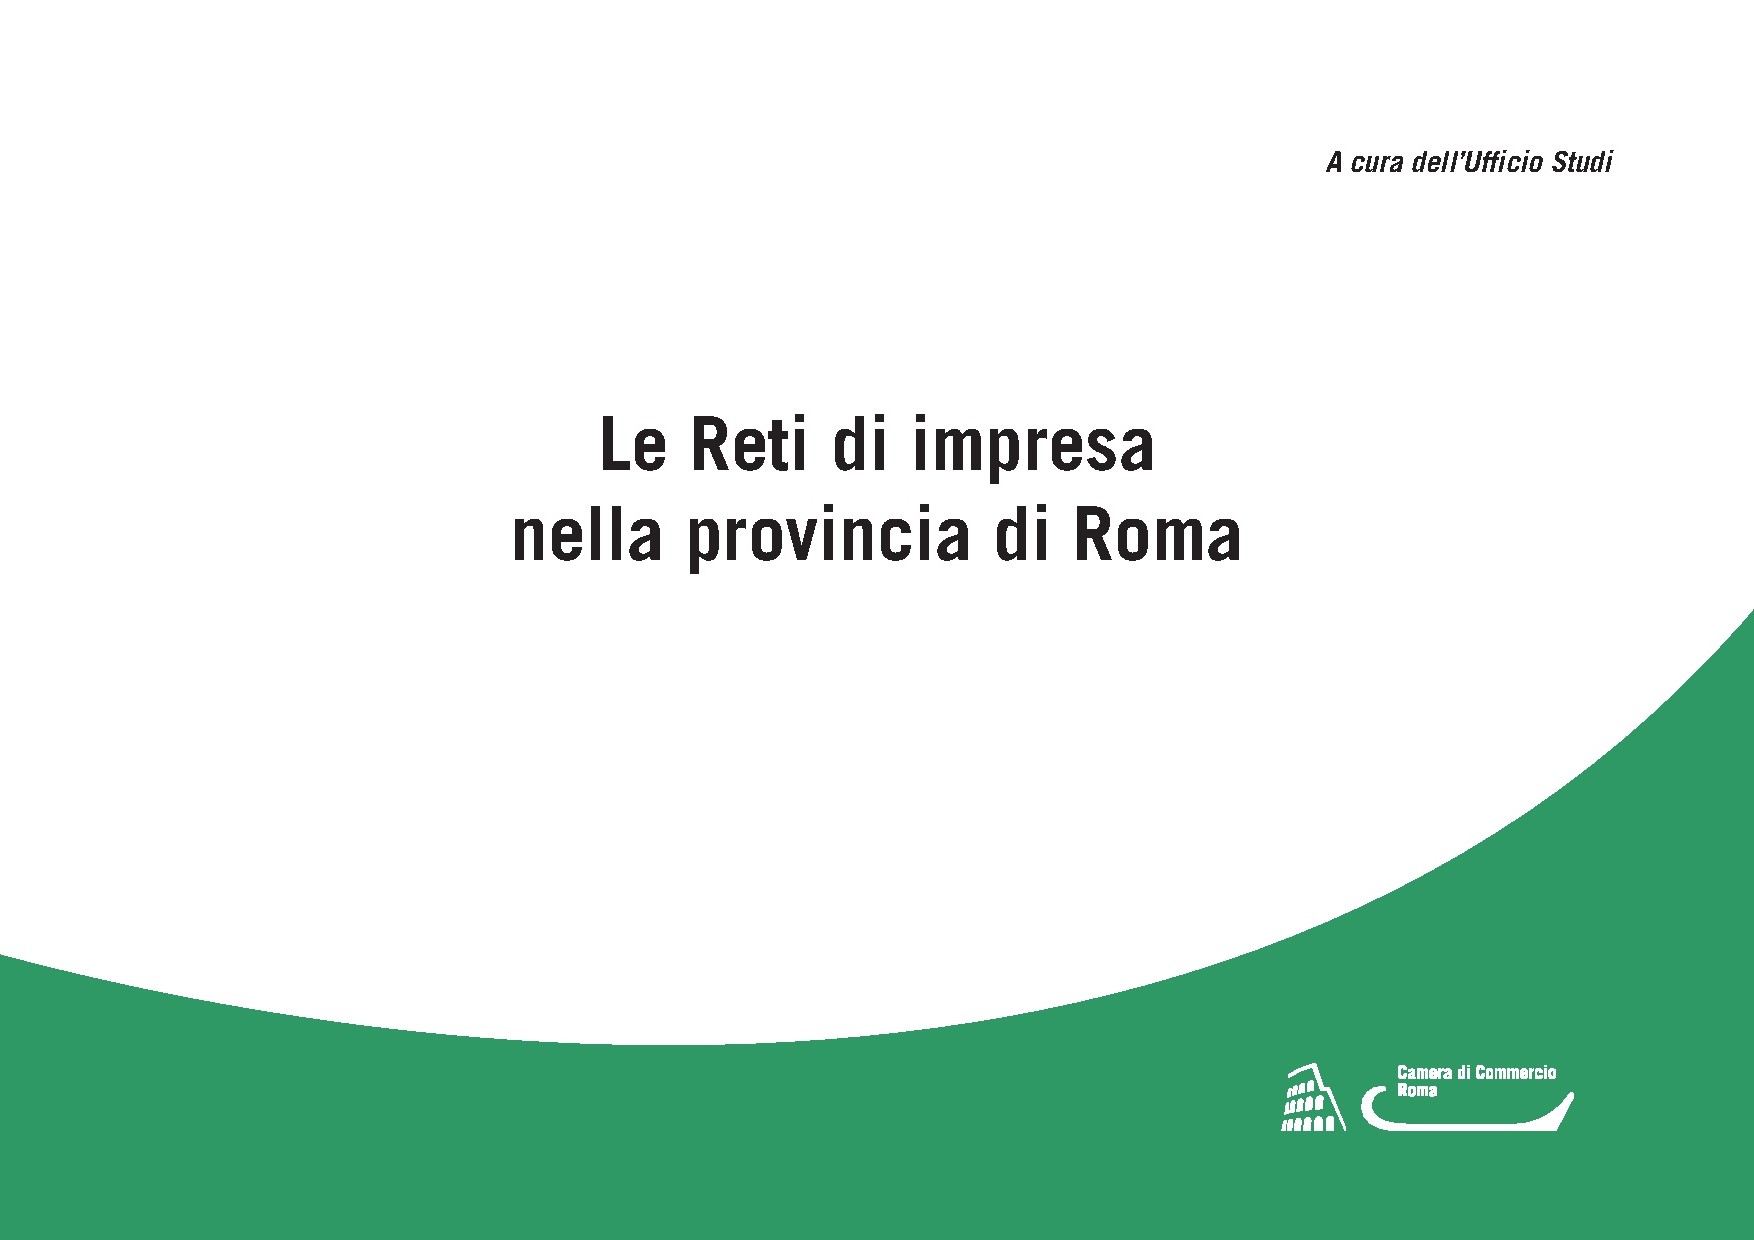 Le Reti di impresa nella provincia di Roma